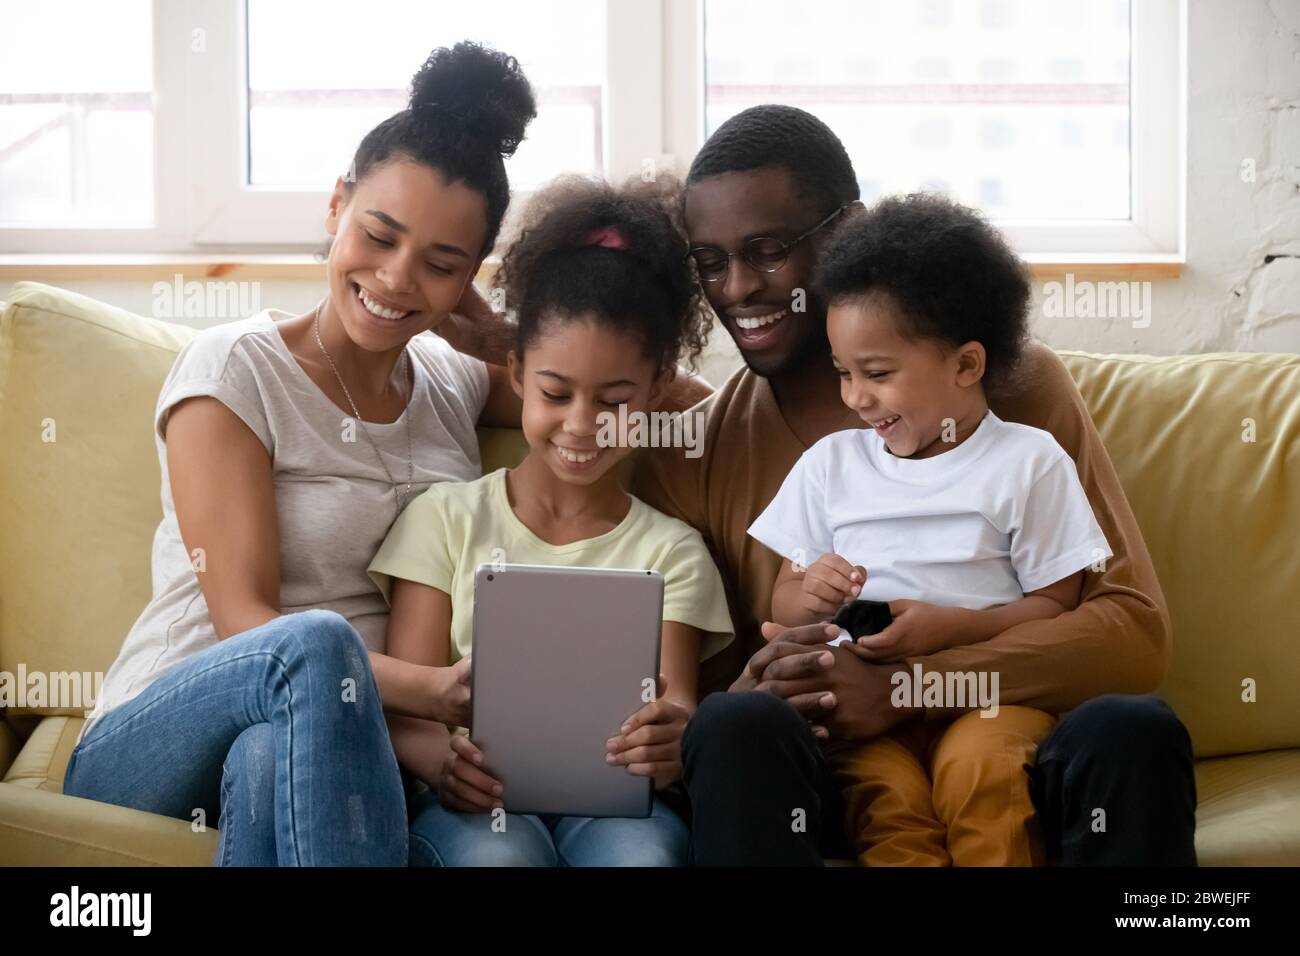 Les familles africaines avec enfants passent du temps libre à utiliser une tablette Banque D'Images